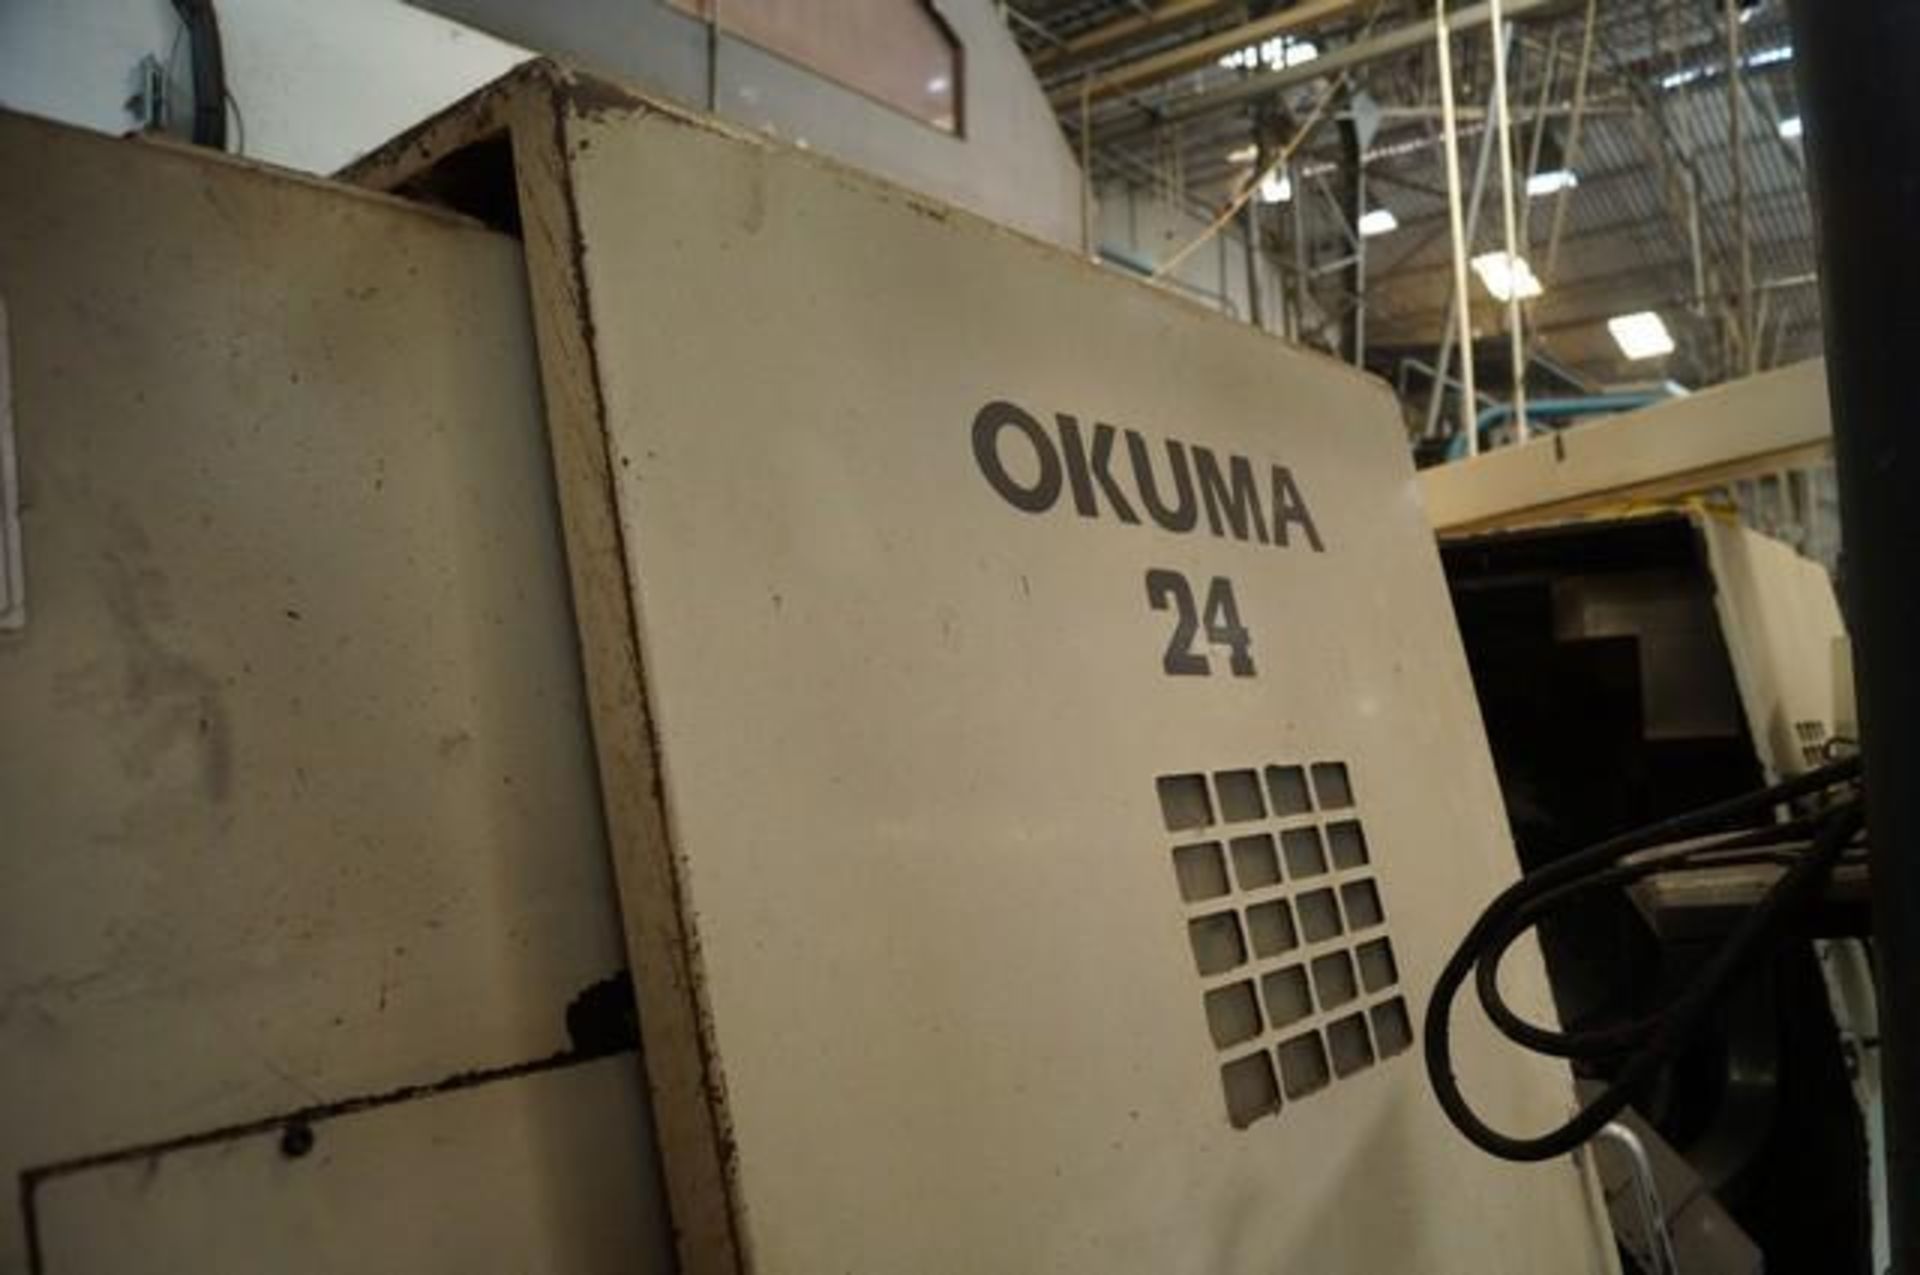 1998 OKUMA LU25 Twin Turret CNC Horizontal Turning Center - Image 2 of 12